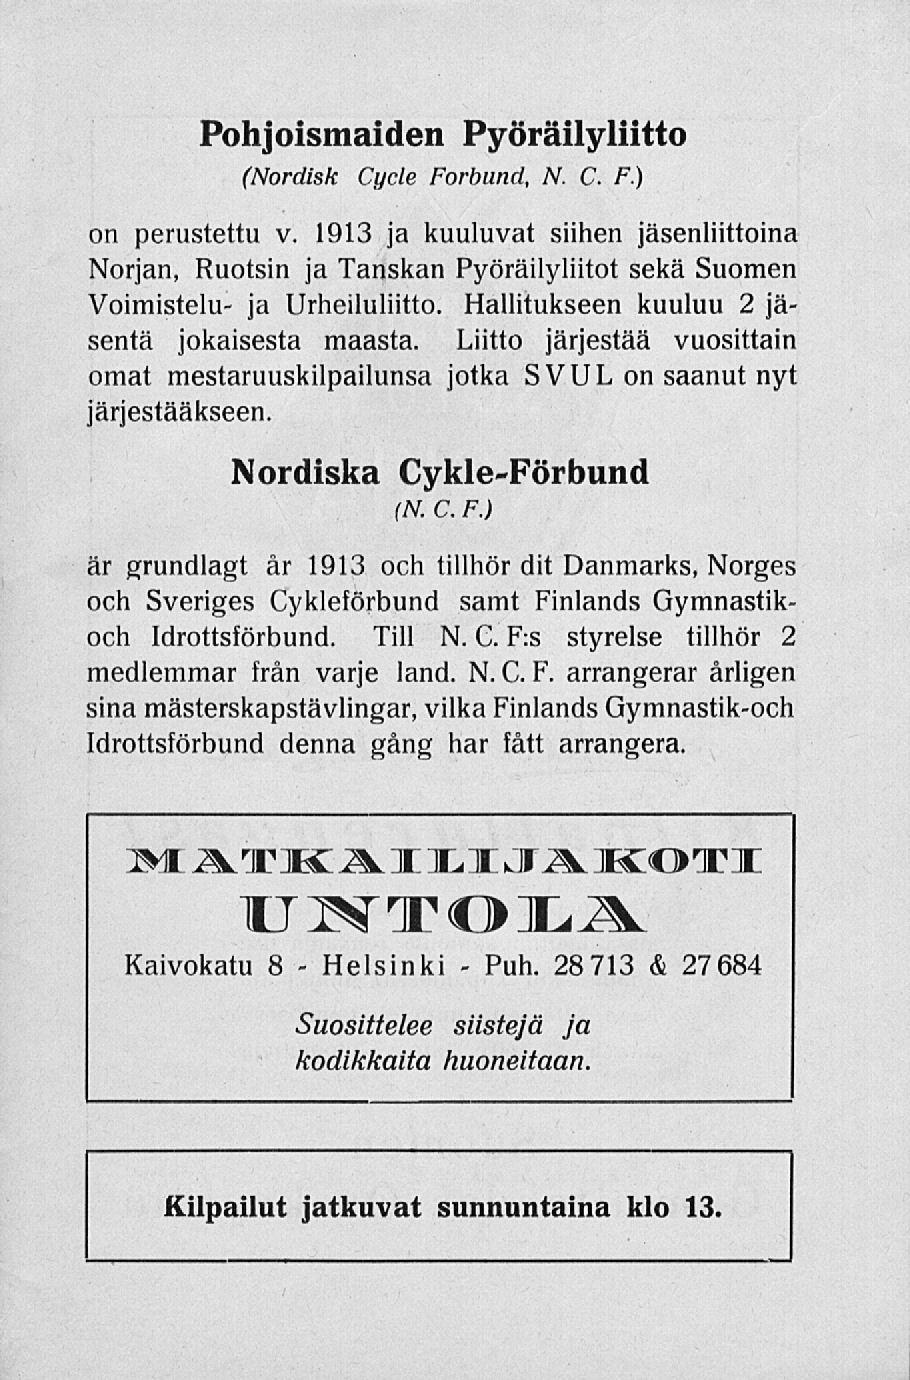 Helsinki Puh. Pohjoismaiden Pyöräilyliitto (Nordisk Cycle Förbund, N. C. F.) on perustettu v.